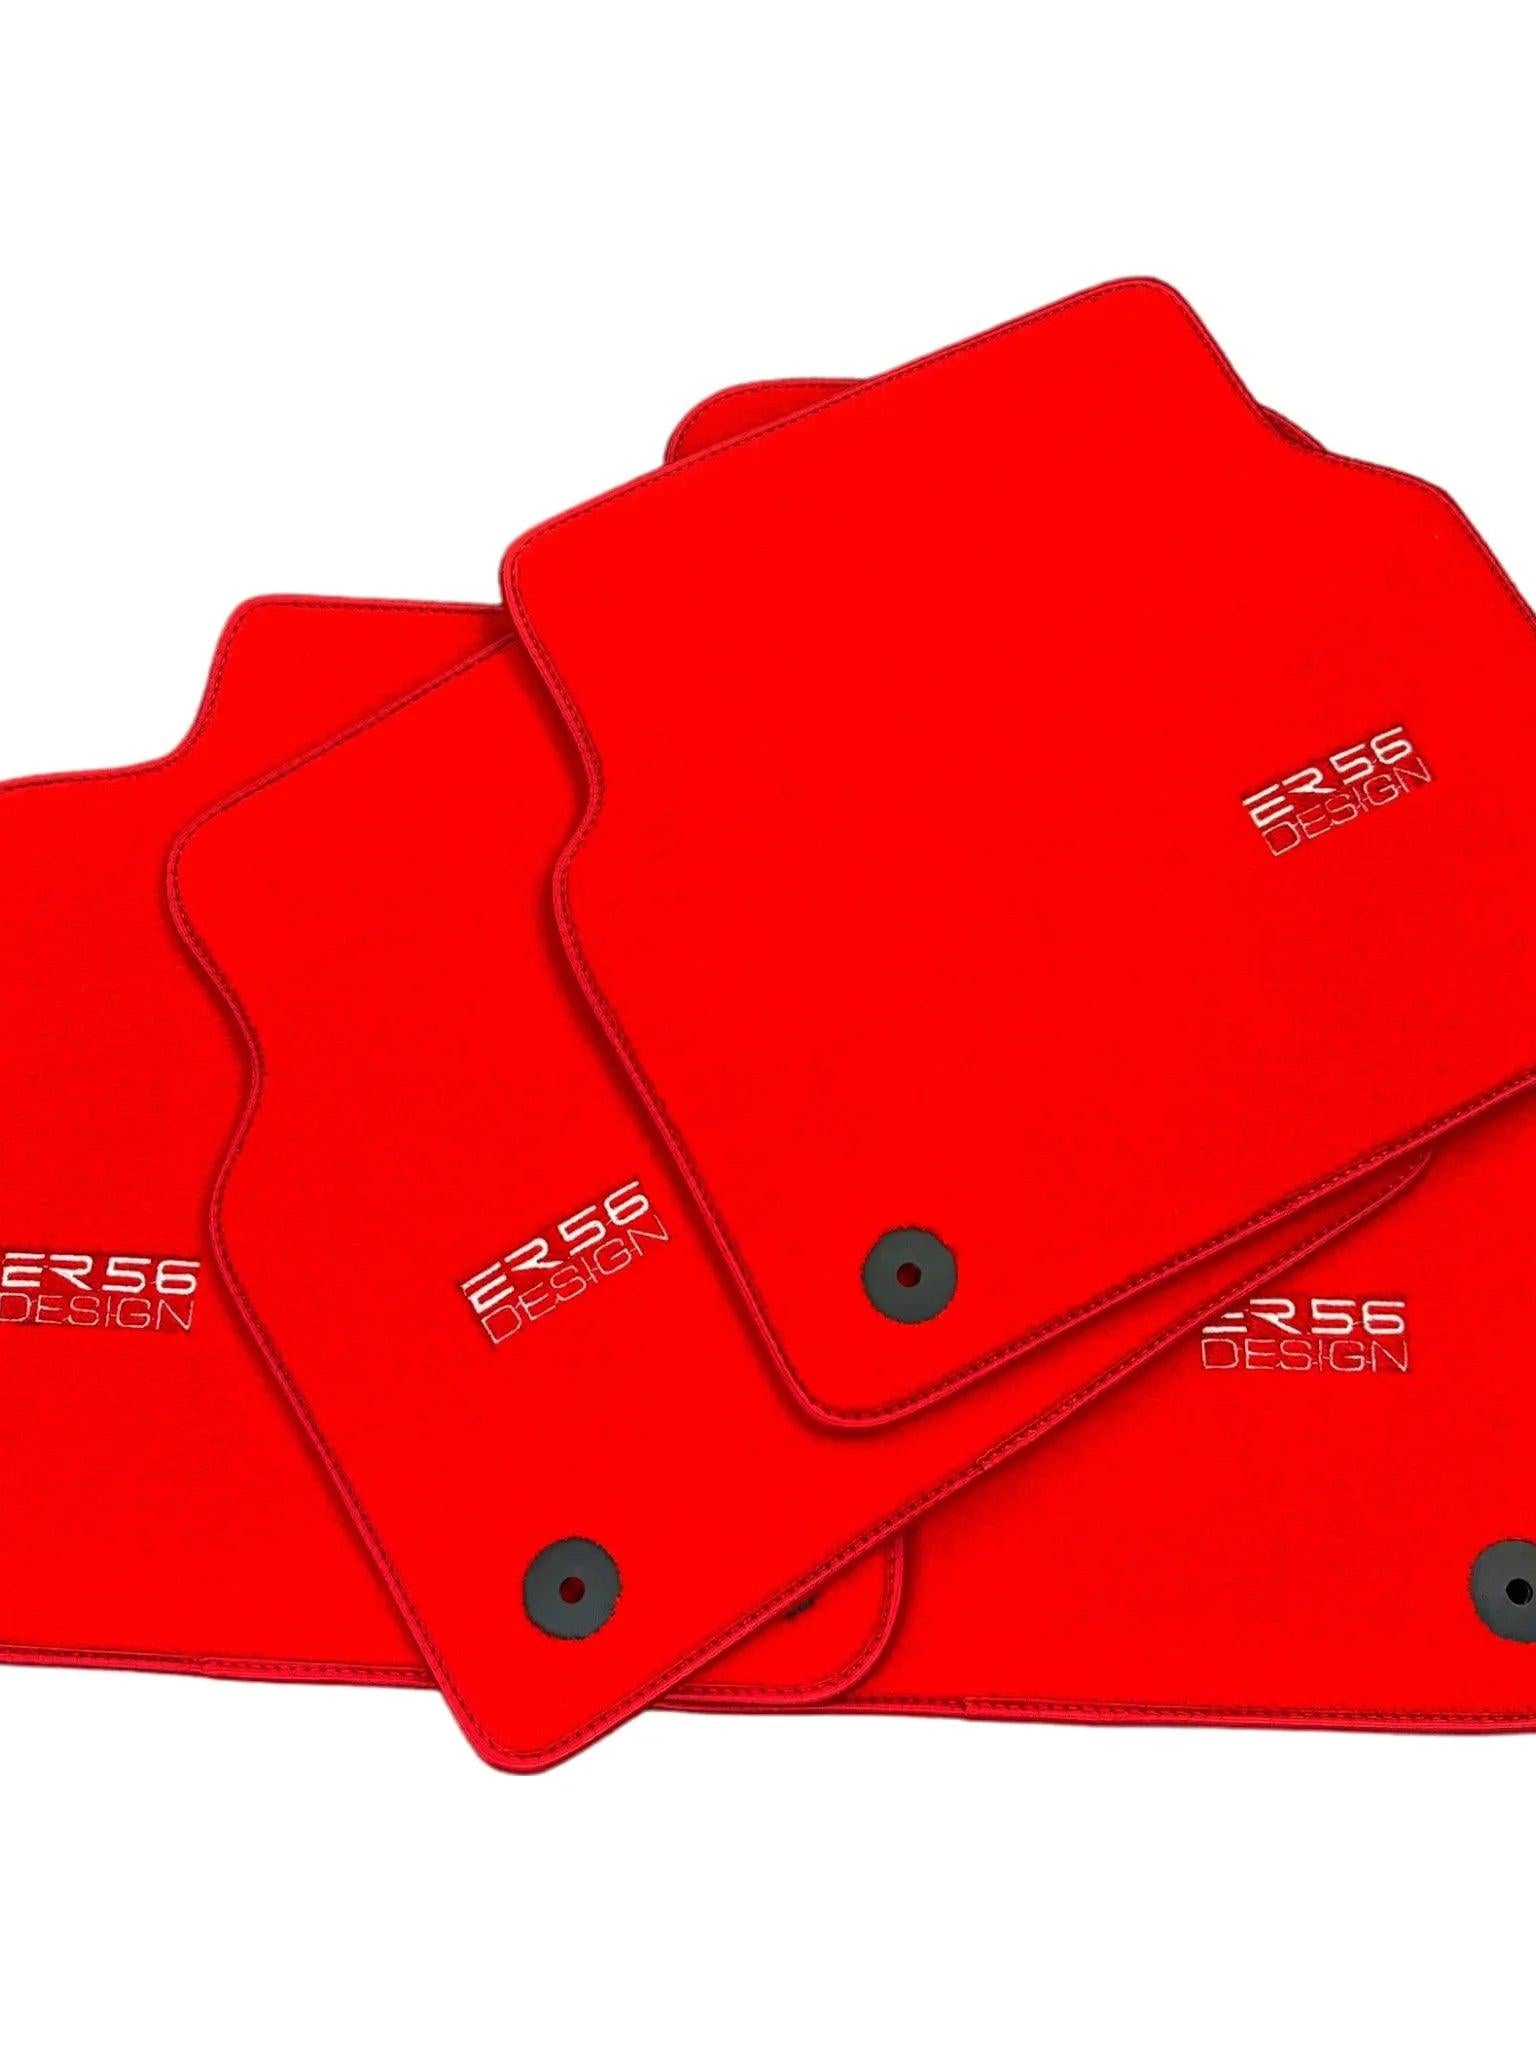 Red Floor Mats for Audi A6 - C7 Allroad Quattro (2012-2019) | ER56 Design